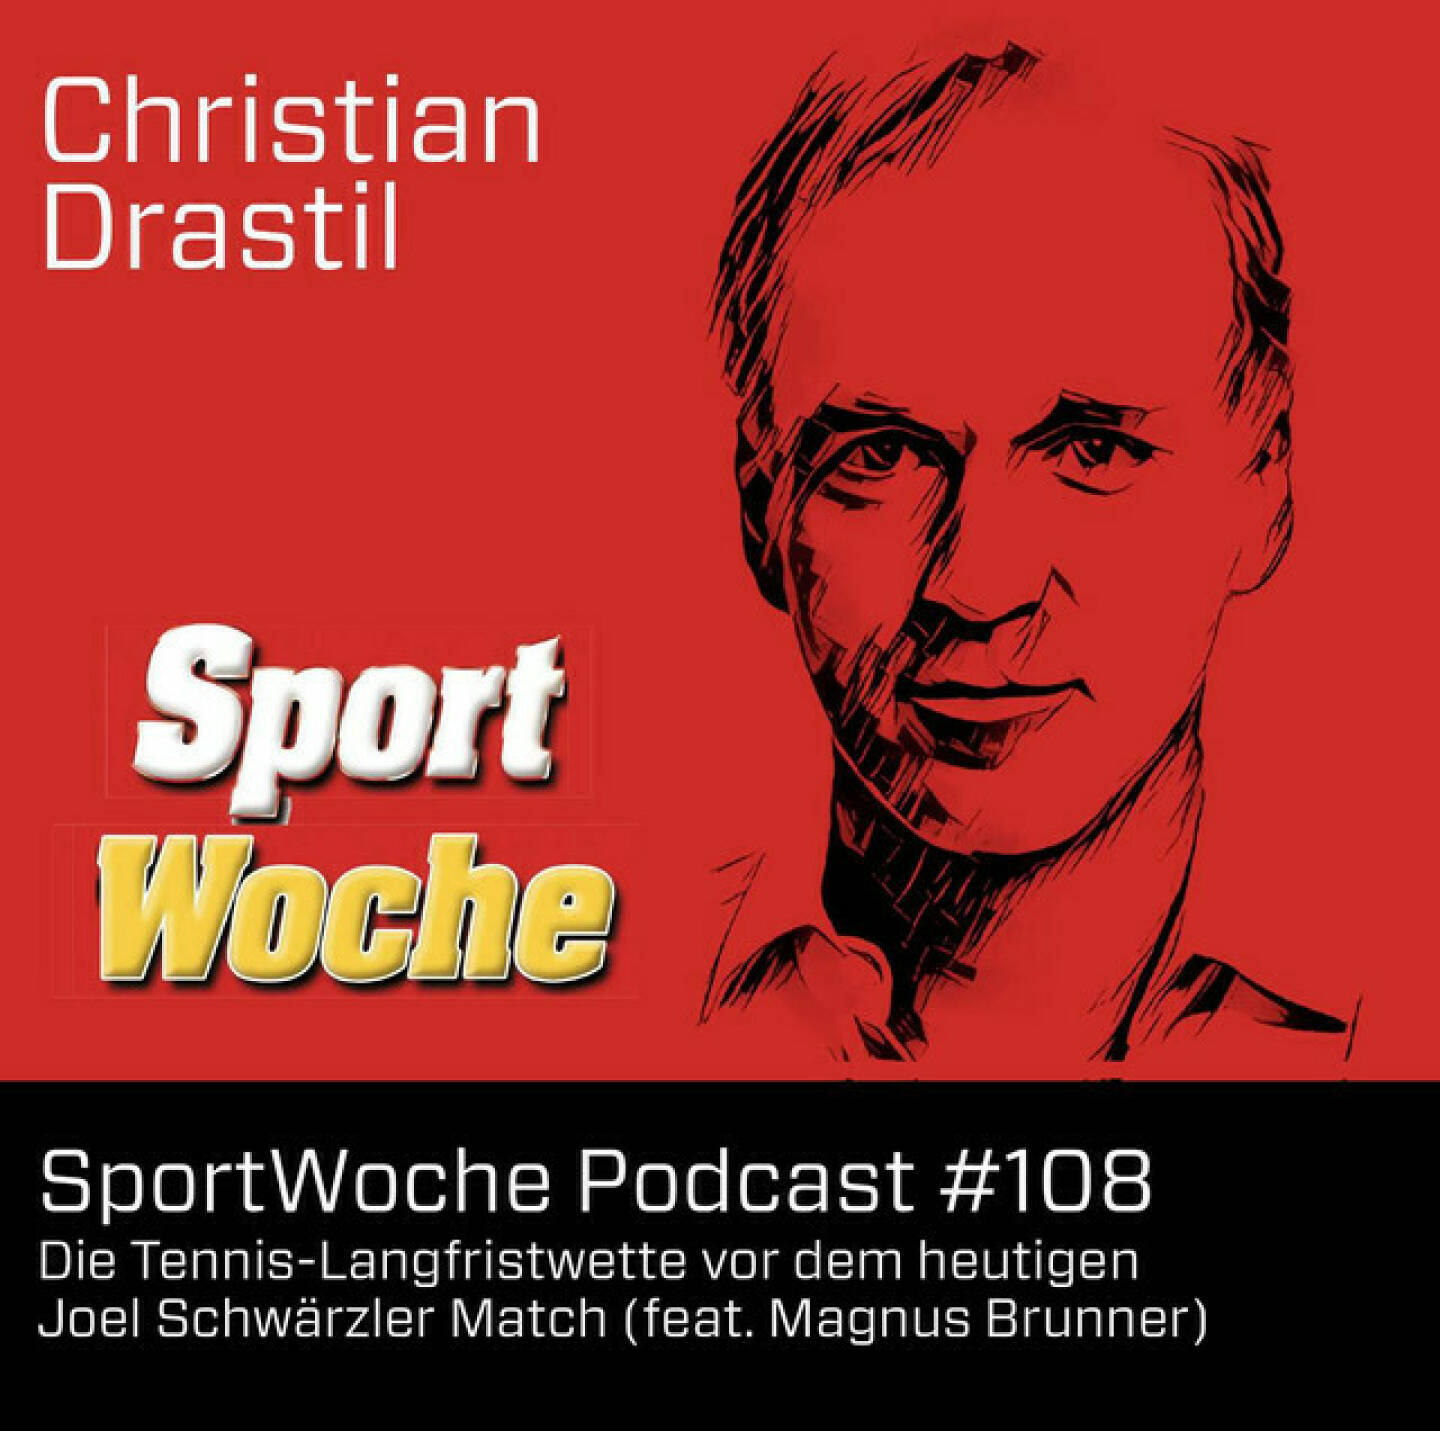 https://open.spotify.com/episode/63v8NZ07RwfR9UwiPQuA6M
SportWoche Podcast #108 feat Magnus Brunner: Die Langfristwette vor dem heutigen Joel Schwärzler Match - <p>Im egoth-Verlag erscheint Anfang Q4/2024 ein Buch mit ca. 350 Seiten. Dies mit Inhalten aus <a href=http://christian-drastil.com/boerse target=_blank>http://christian-drastil.com/boerse</a> ,  <a href=http://www.christian-drastil.com/sport target=_blank>http://www.christian-drastil.com/sport</a> , <a href=https://audio-cd.at/spotify target=_blank>https://audio-cd.at/spotify</a> und auf 48 Seiten allen Original-Covern der SportWoche  Im Buch, das in Tagebuch-Form aufgebaut ist, geht es auch horizontal erzählt um zwei Tennis-Wetten: Geht sich für Jannik Sinner die Nr. 1 in der ATP-Weltrangliste aus? Schafft es  ÖTV-Youngster Joel Schwärzler bis zur Erscheinung des Buchs in die ATP Top150? Heute spielt Joel beim ATP-100-Challenger in Mauthausen. Davor hab ich Finanzminister Magnus Brunner (Ex-ÖTV-Präsident, Tennisspieler und über seine Söhne auch Schwärzler-Wegbegleiter) um einen Input gebeten. Auch der immer-junge DocLX Alex Knechtsberger drückt die Daumen für eine tolle Karriere.<br/><br/><a href=https://www.instagram.com/joel.schwaerzler/?hl&#61;de target=_blank>https://www.instagram.com/joel.schwaerzler/?hl&#61;de</a><br/><br/>Infos zum Buch: <a href=https://photaq.com/page/index/4142/ target=_blank>https://photaq.com/page/index/4142/</a><br/><br/><a href=https://www.egoth.at target=_blank>https://www.egoth.at</a><br/><br/><a href=http://www.sportgeschichte.at target=_blank>http://www.sportgeschichte.at</a><br/><br/> <br/><br/>http;//www.creagency.at<br/><br/>Die SportWoche Podcasts sind presented by Instahelp: Psychologische Beratung online, ohne Wartezeit, vertraulich &amp; anonym. Nimm dir Zeit für dich unter <a href=https://instahelp.me/de/ target=_blank>https://instahelp.me/de/</a> .<br/><br/>About: Die Marke, Patent, Rechte und das Archiv der SportWoche wurden 2017 von Christian Drastil Comm. erworben, Mehr unter <a href=http://www.sportgeschichte.at target=_blank>http://www.sportgeschichte.at</a> . Der neue SportWoche Podcast ist eingebettet in „ Wiener Börse, Sport, Musik (und mehr)“ auf <a href=http://www.christian-drastil.com/podcast target=_blank>http://www.christian-drastil.com/podcast</a> und erscheint, wie es in Name SportWoche auch drinsteckt, wöchentlich. Bewertungen bei Apple machen mir Freude: <a href=https://podcasts.apple.com/at/podcast/audio-cd-at-indie-podcasts-wiener-boerse-sport-musik-und-mehr/id1484919130 target=_blank>https://podcasts.apple.com/at/podcast/audio-cd-at-indie-podcasts-wiener-boerse-sport-musik-und-mehr/id1484919130</a> .<br/><br/>Unter <a href=http://www.sportgeschichte.at/sportwochepodcast target=_blank>http://www.sportgeschichte.at/sportwochepodcast</a> sieht man alle Folgen, auch nach Hörer:innen-Anzahl gerankt.</p>